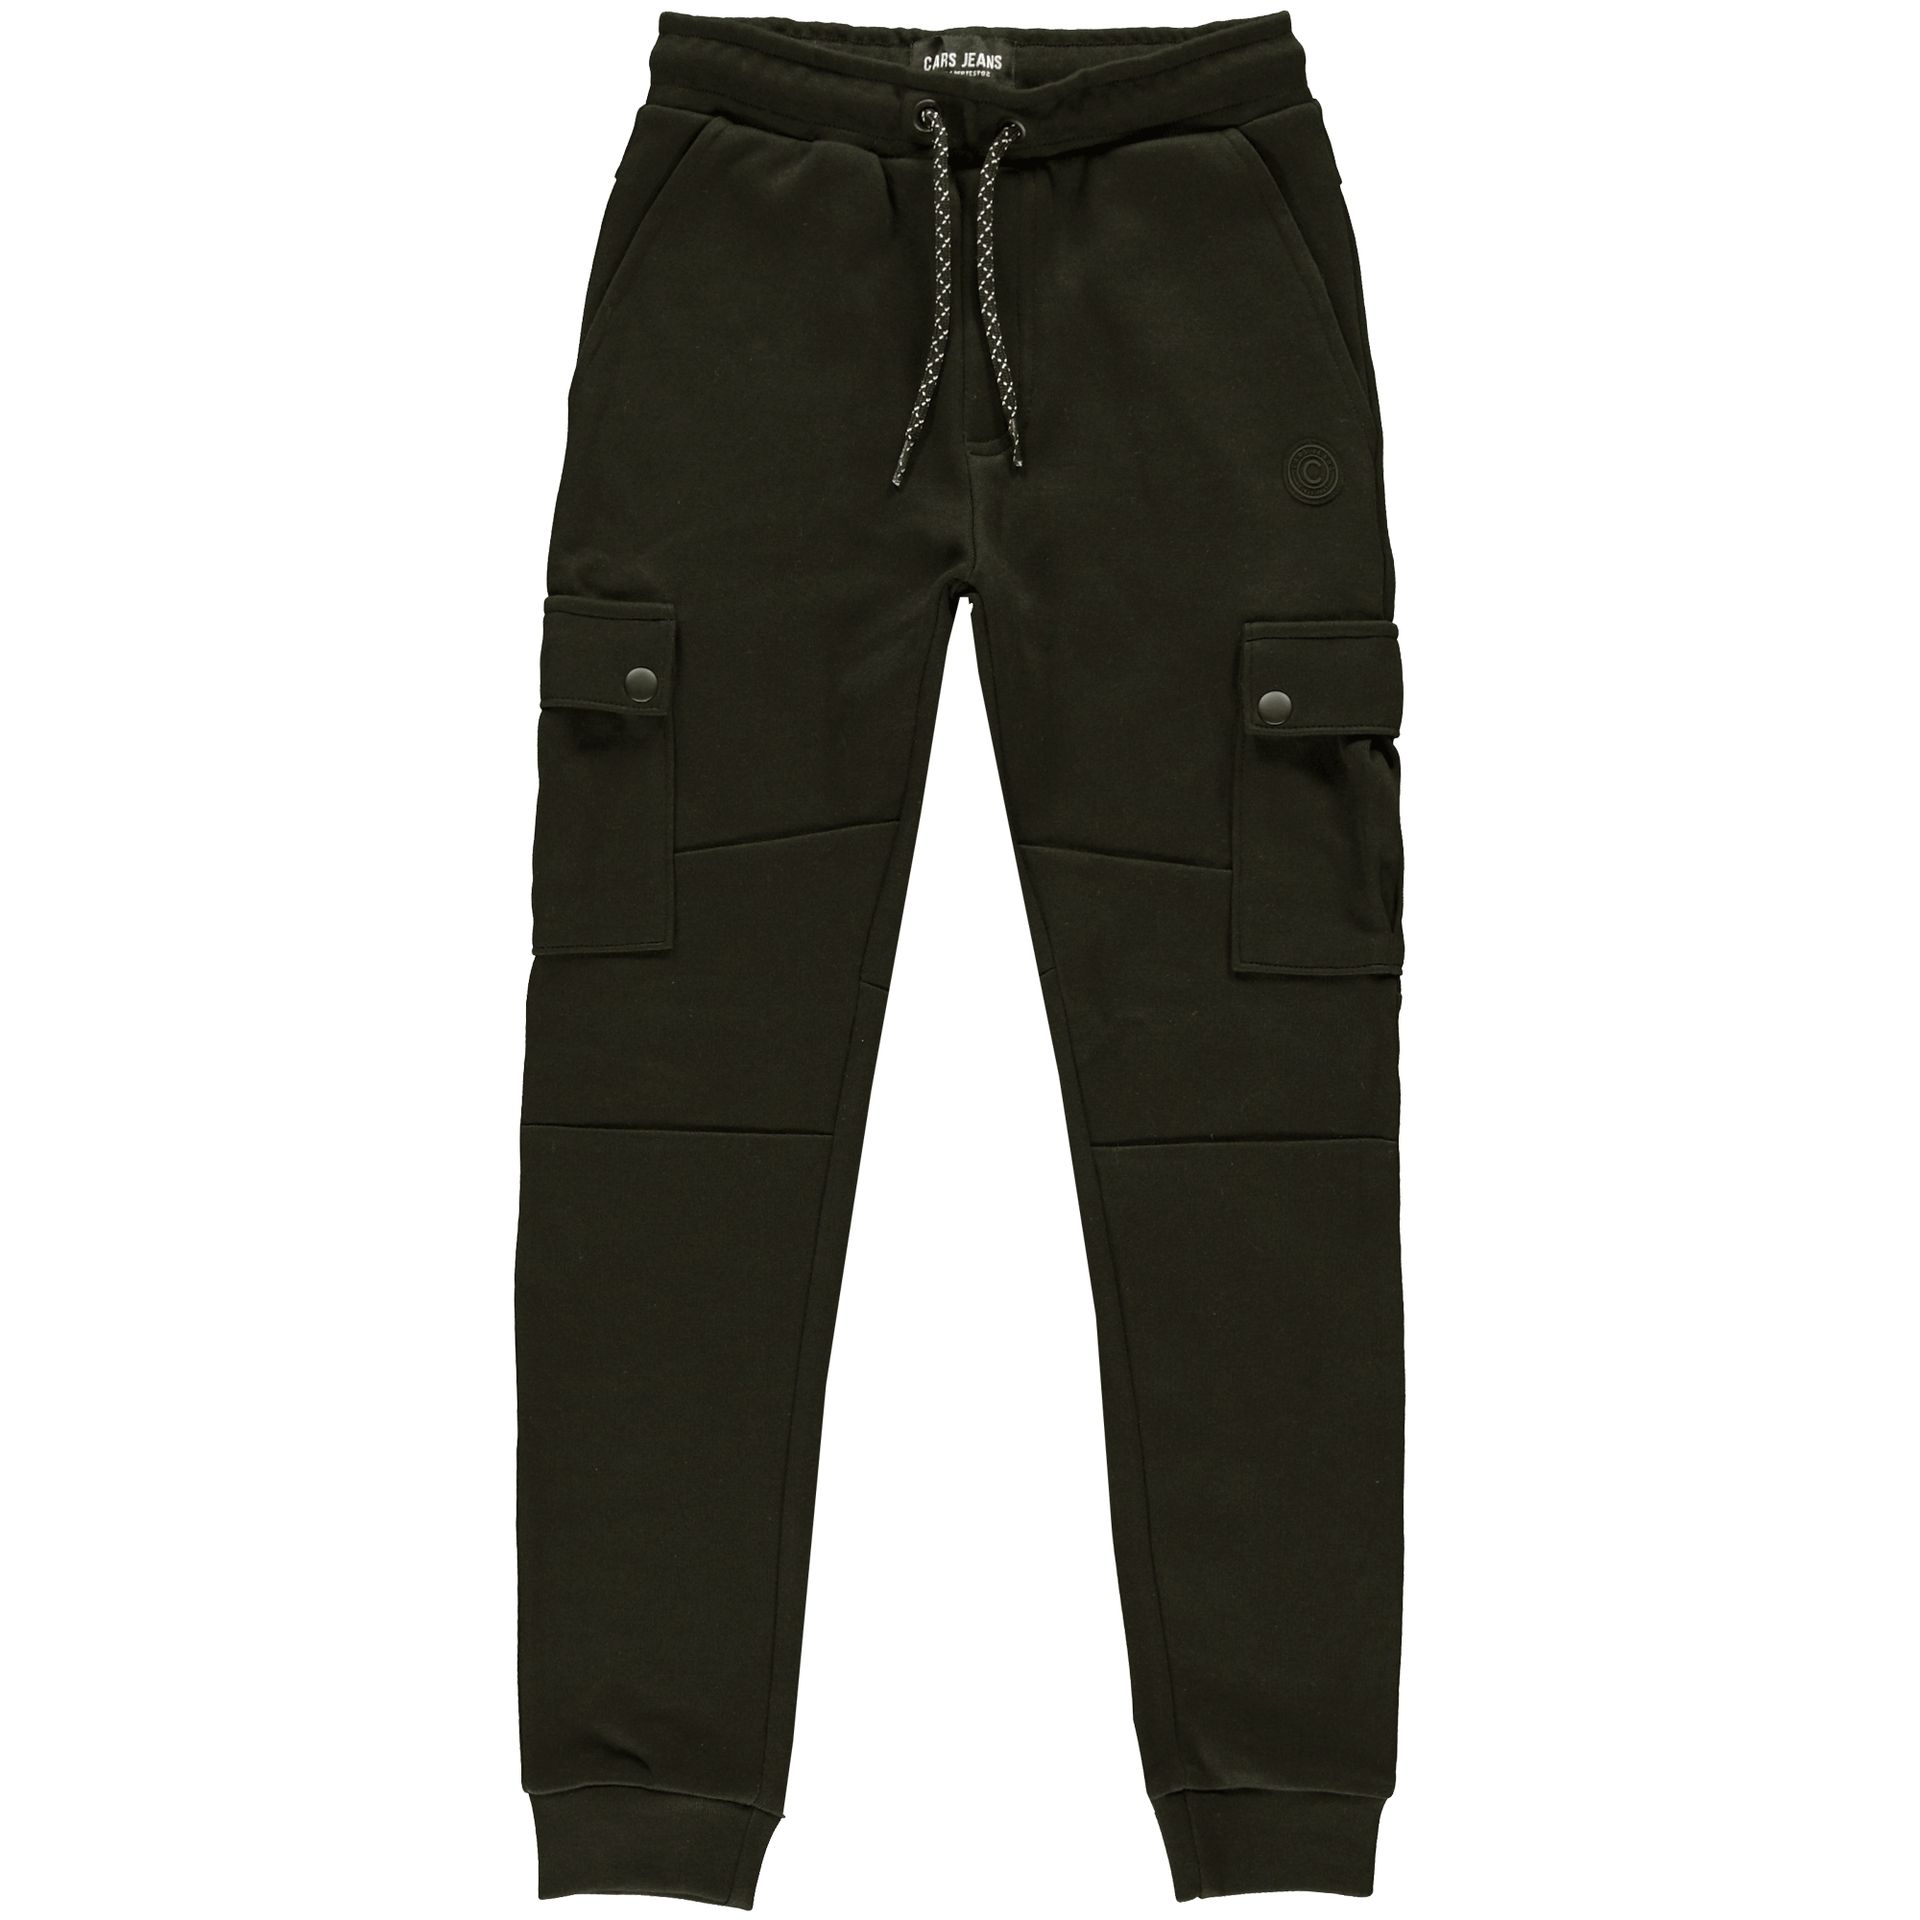 Cars jeans Pants Dushane Jr. 19 army 00105609-EKA03000200000003